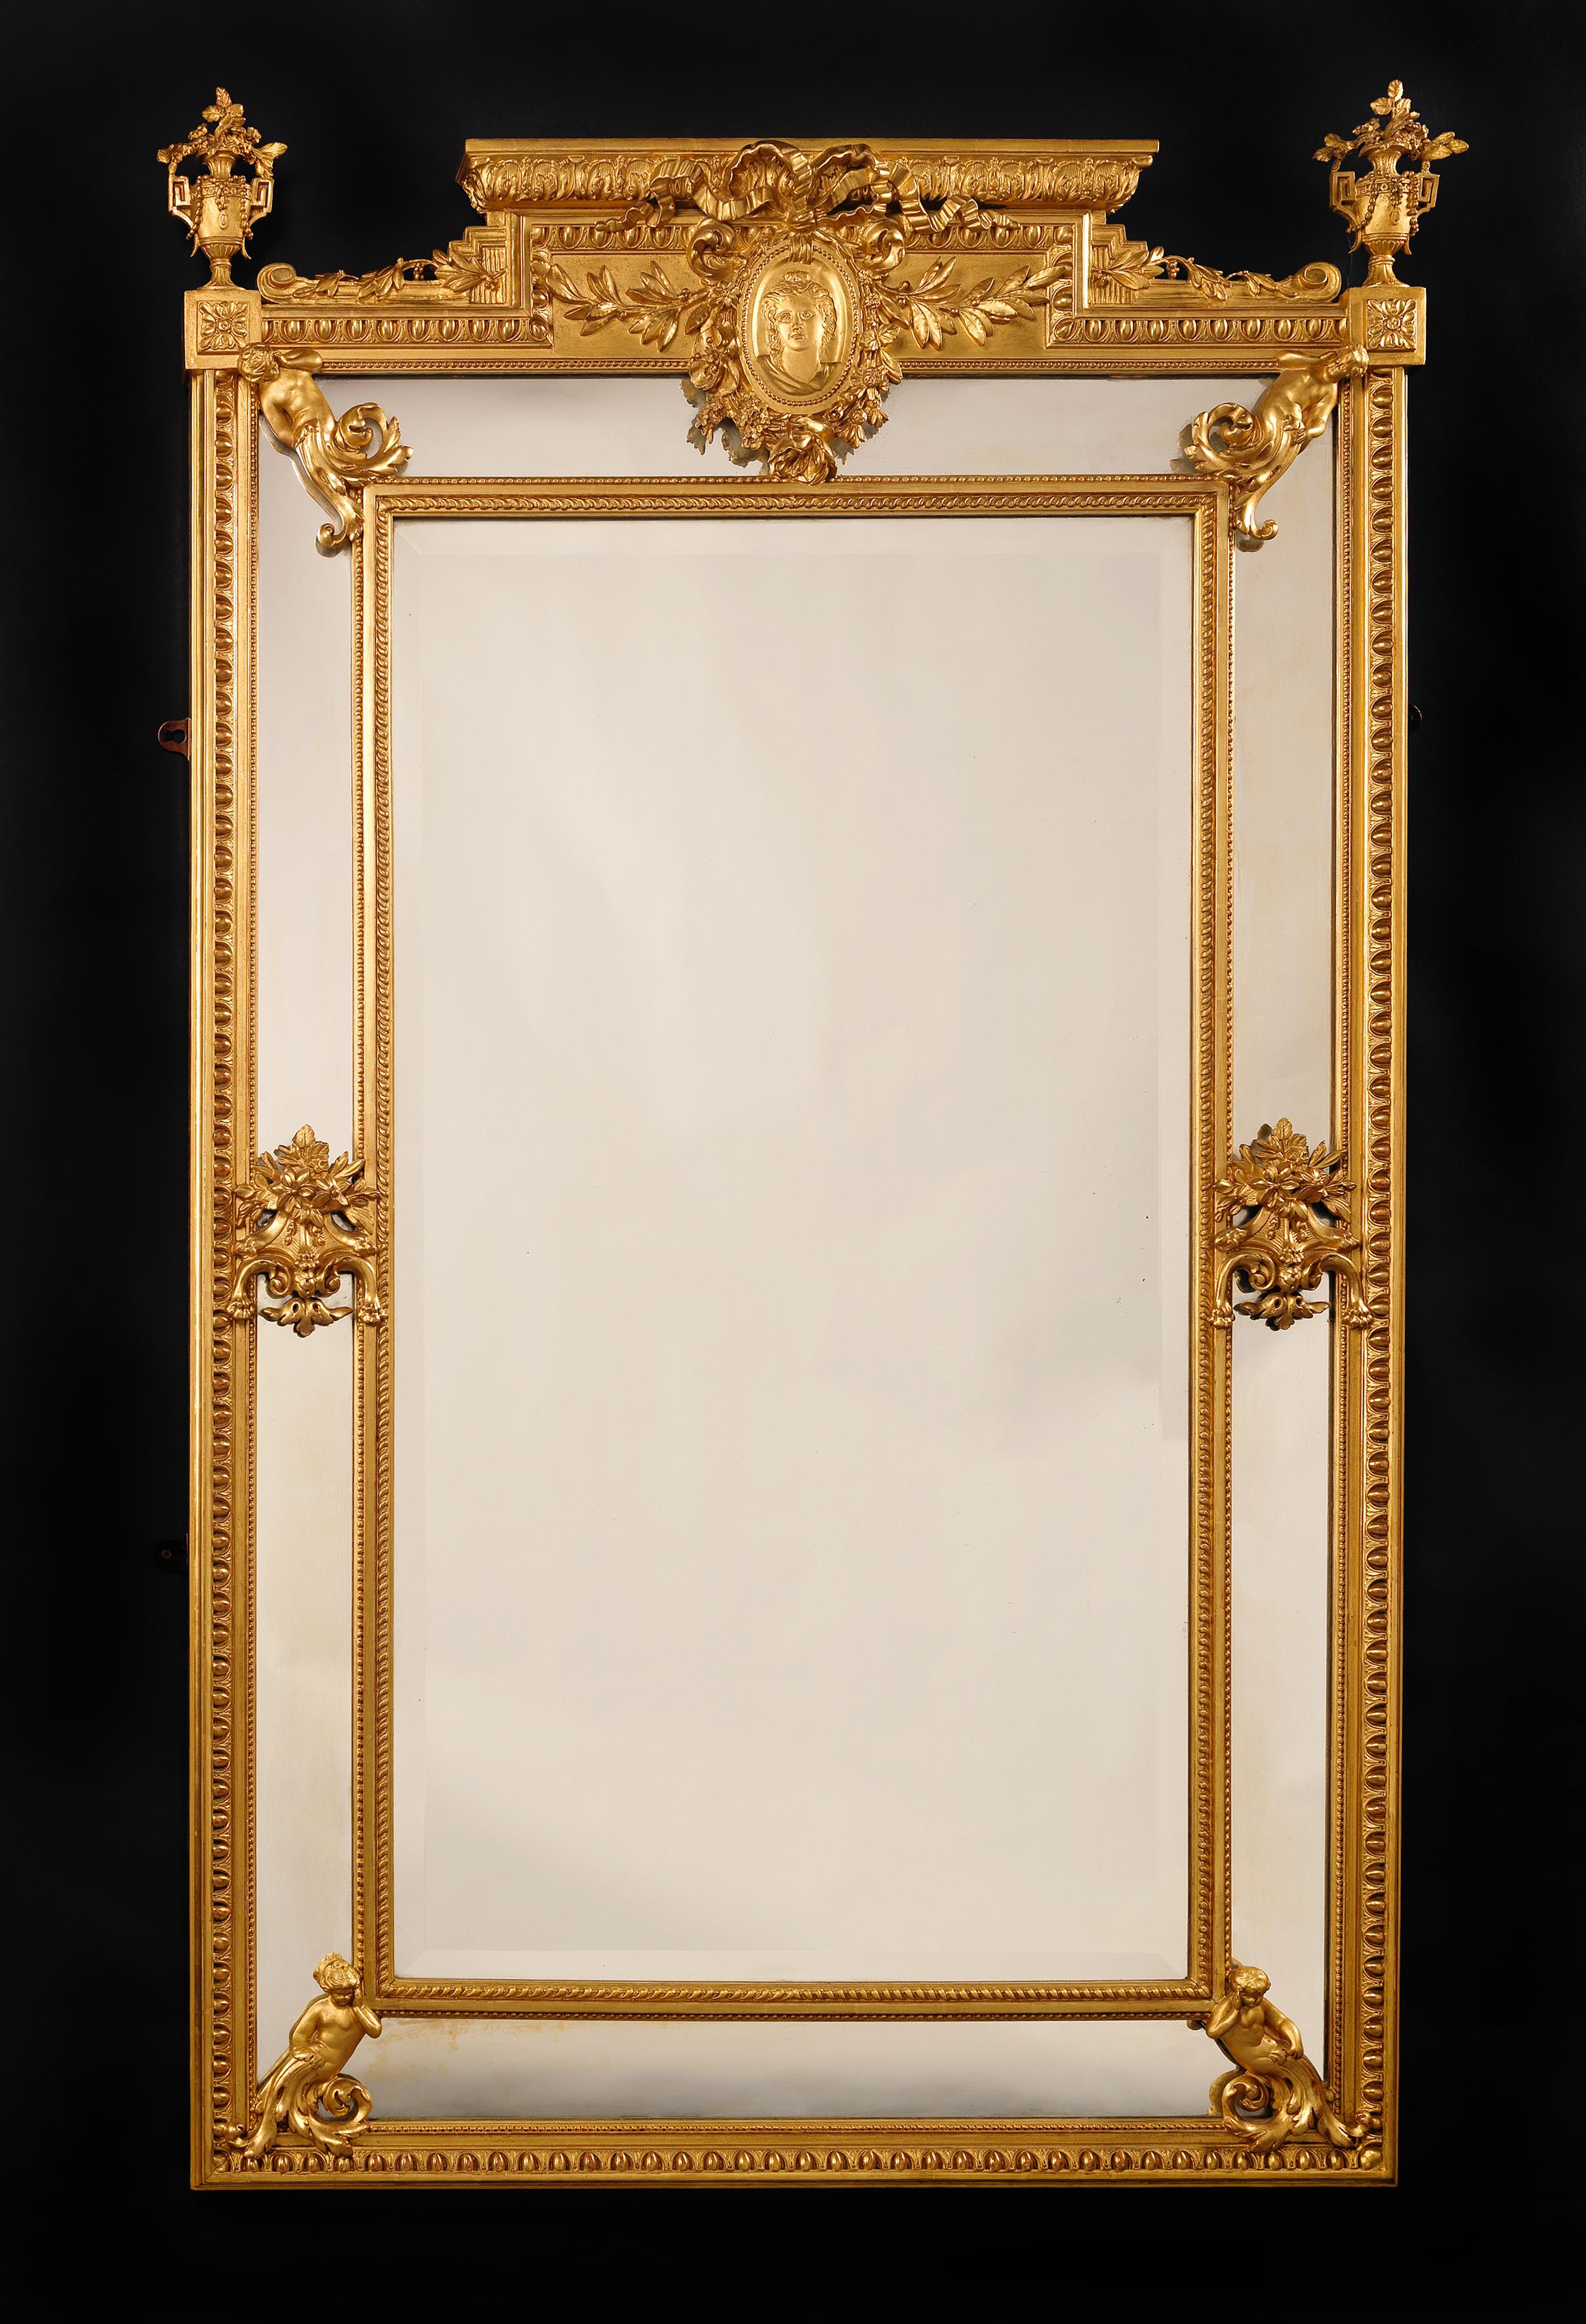 Très beau miroir marginal de style Louis XVI en bois doré sculpté et composition. 

Français, datant d'environ 1890. 

Ce beau miroir présente une bordure godronnée, perlée et ovoïde. Elle est décorée de chérubins dans les angles et centrée par